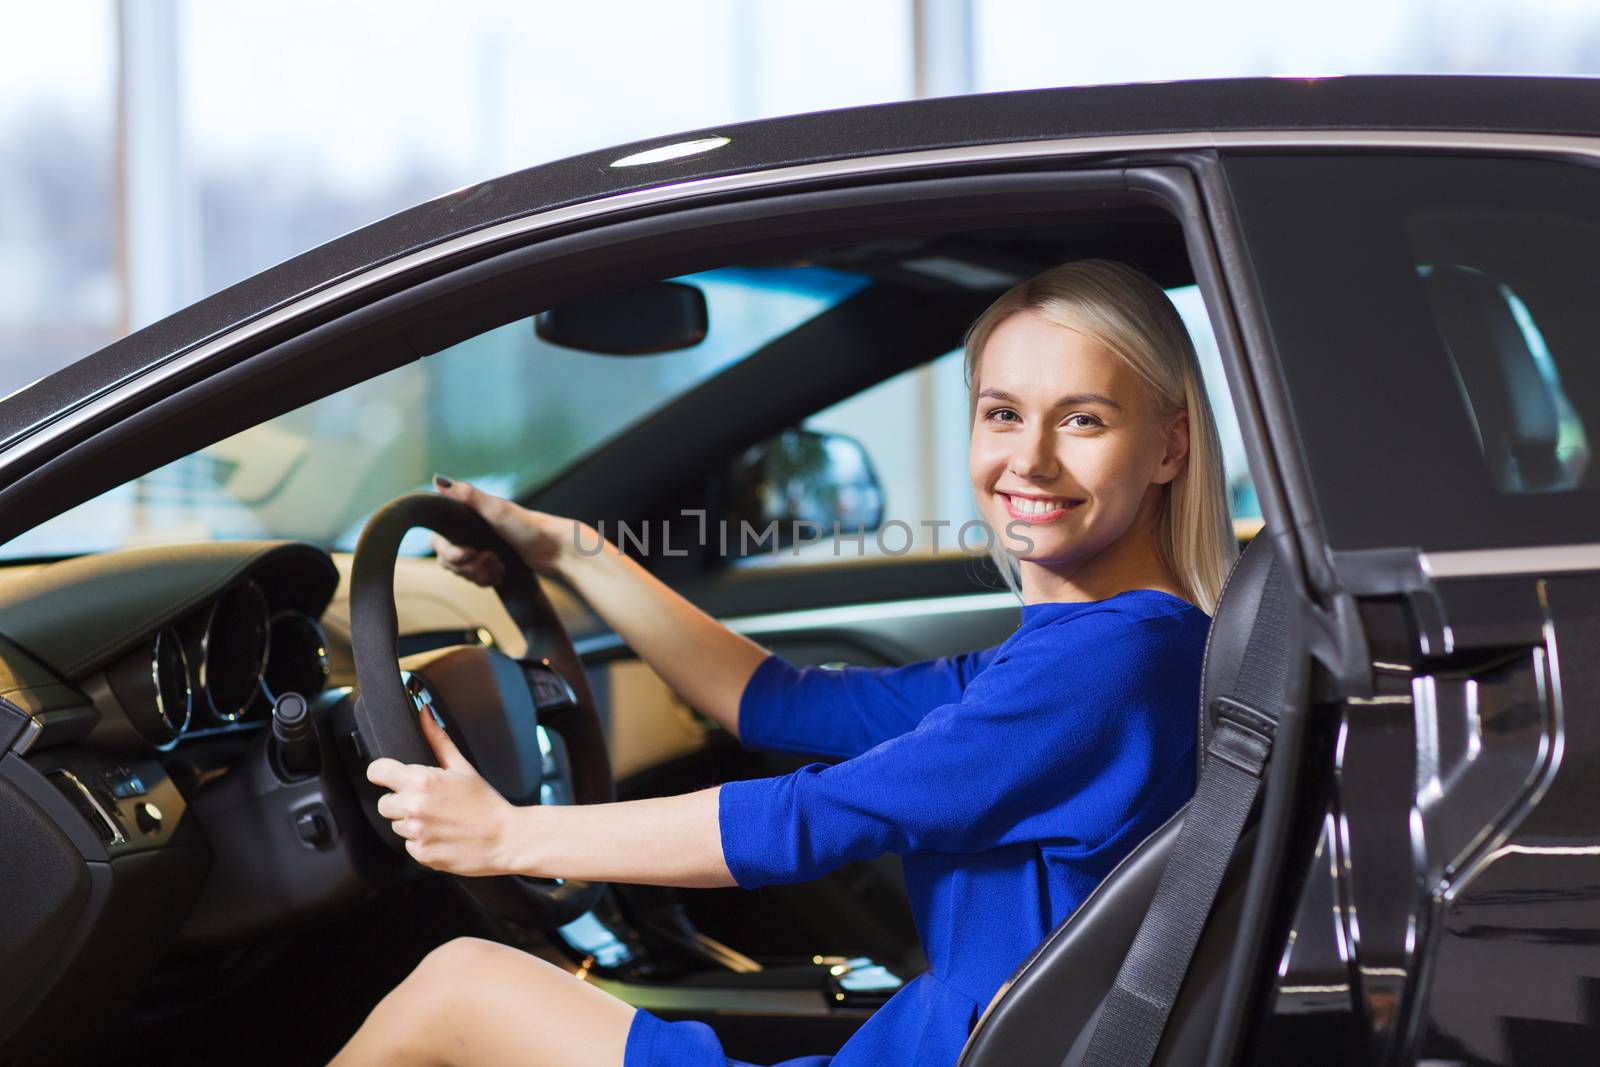 happy woman inside car in auto show or salon by dolgachov